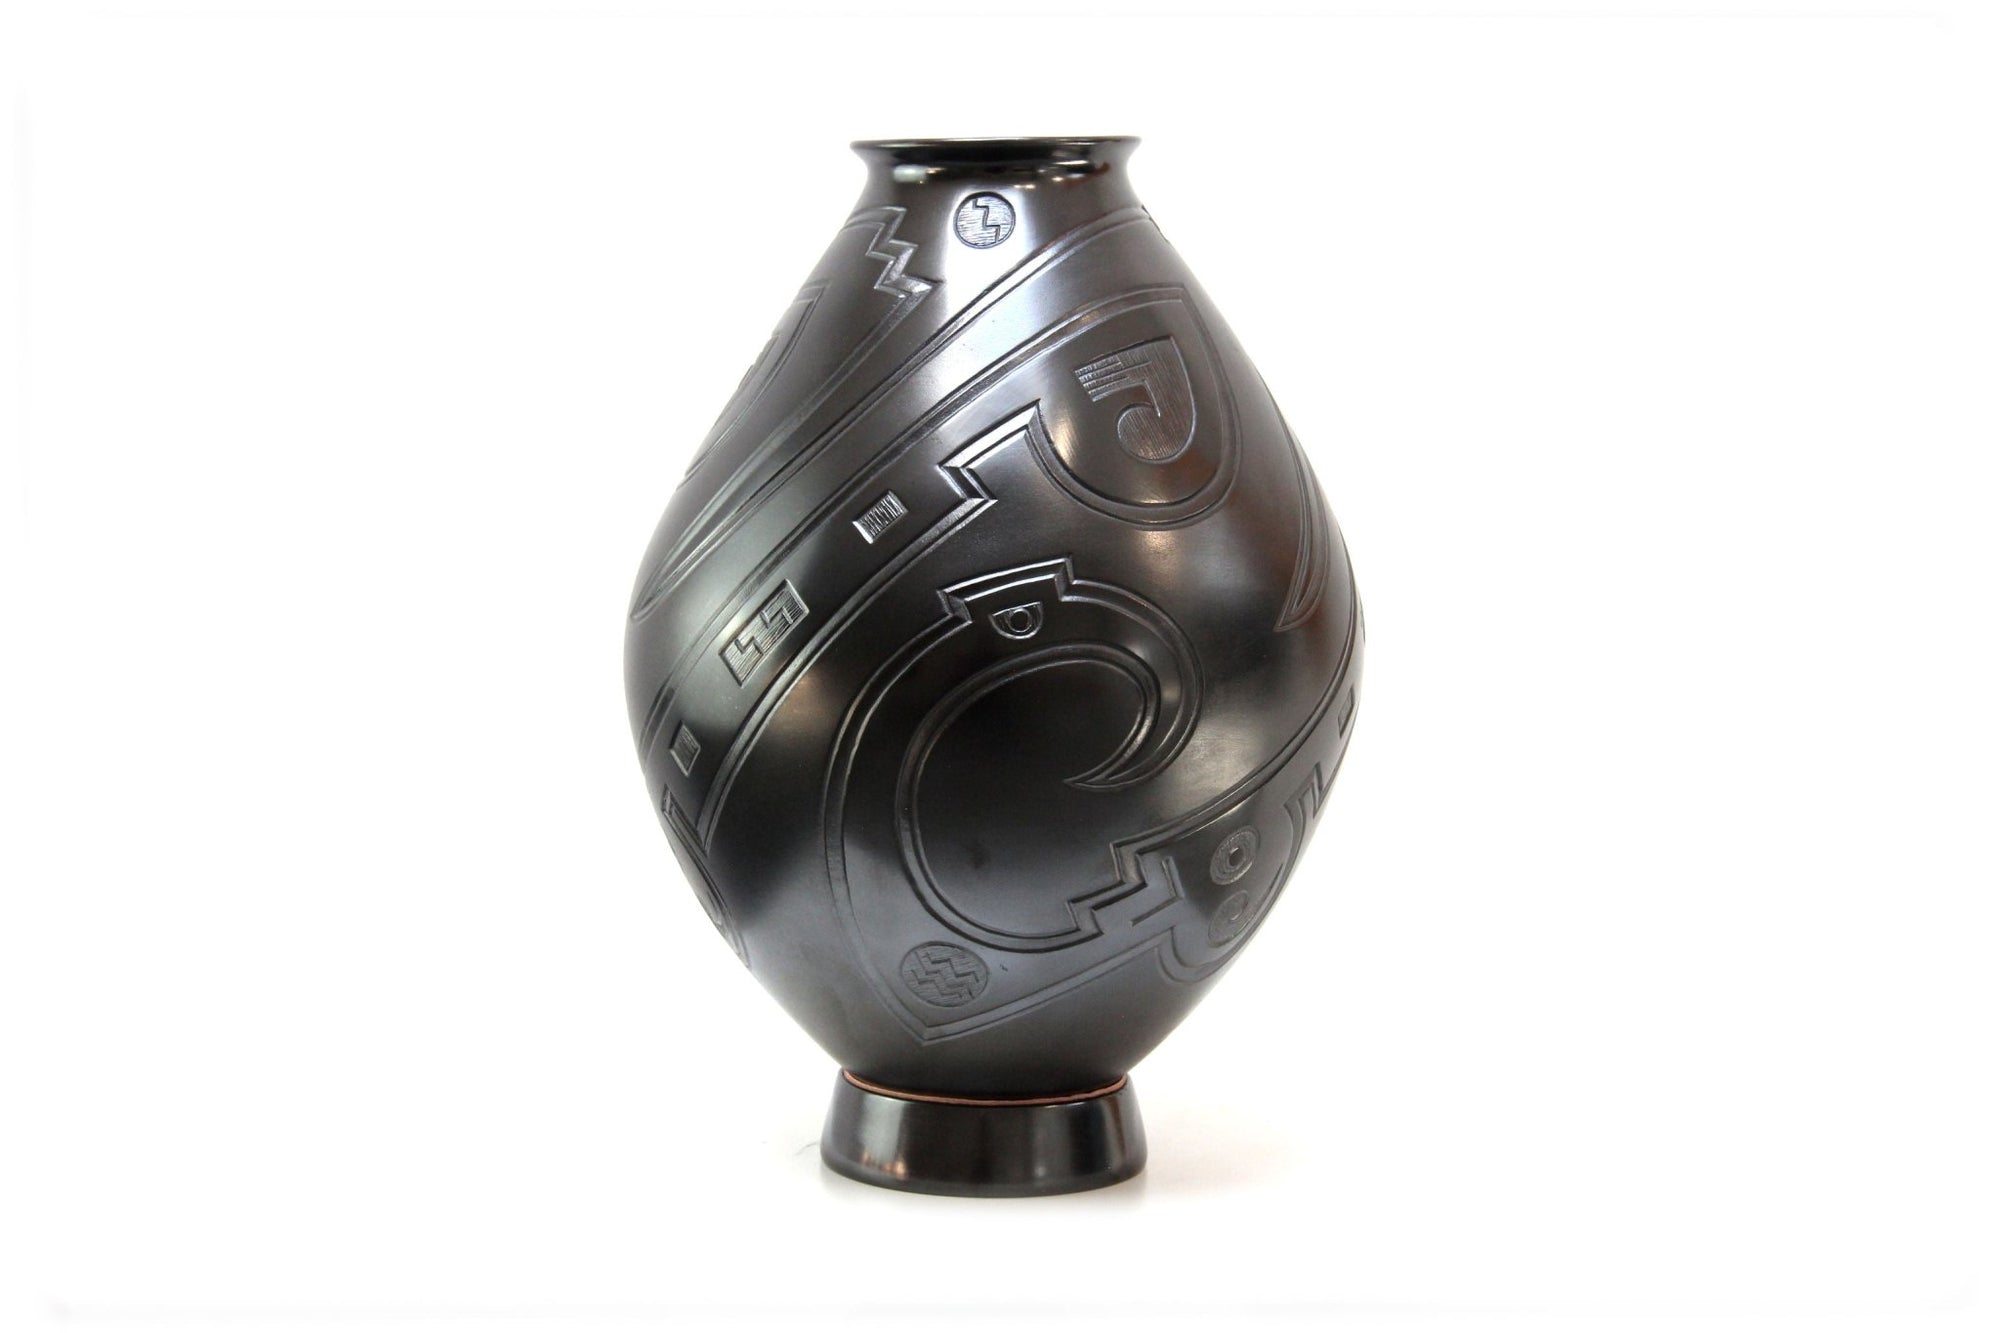 Mata Ortiz Keramik – Schwarze Vase III – Huichol Art – Marakame